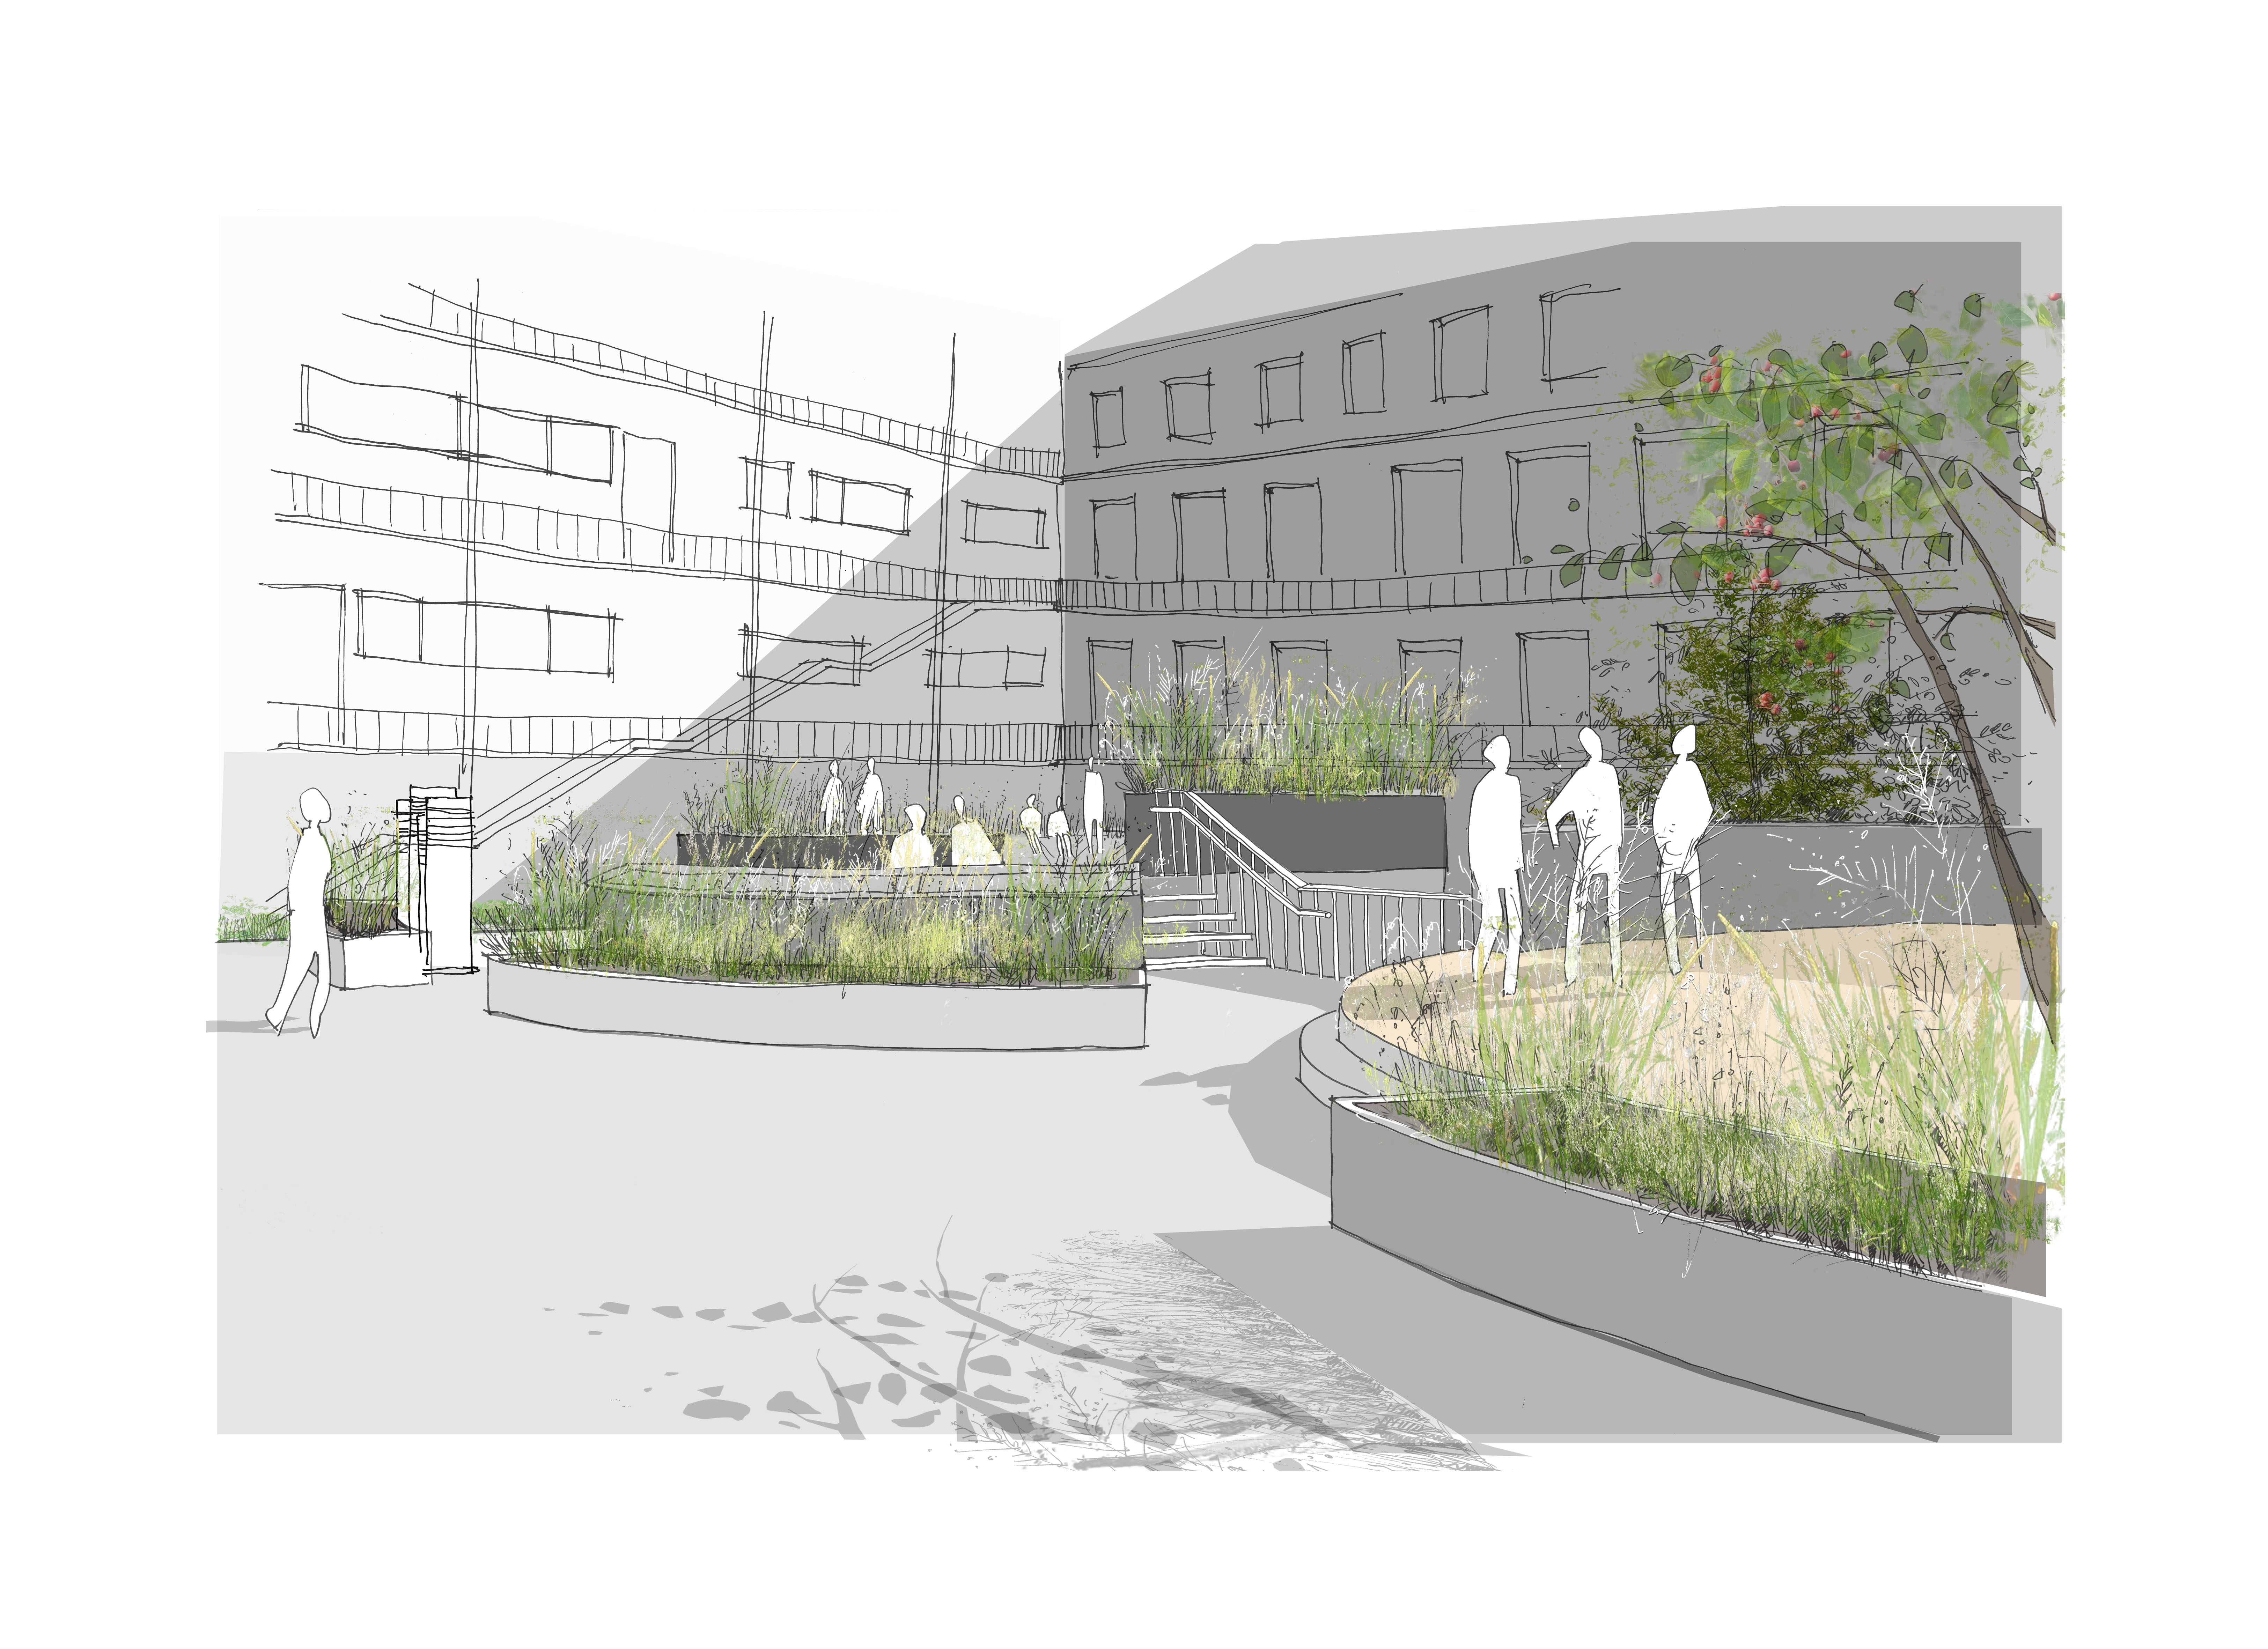 Image: Preliminary draft of the new courtyard. © stadt landschaft plus | Landschaftsarchitekten GmbH